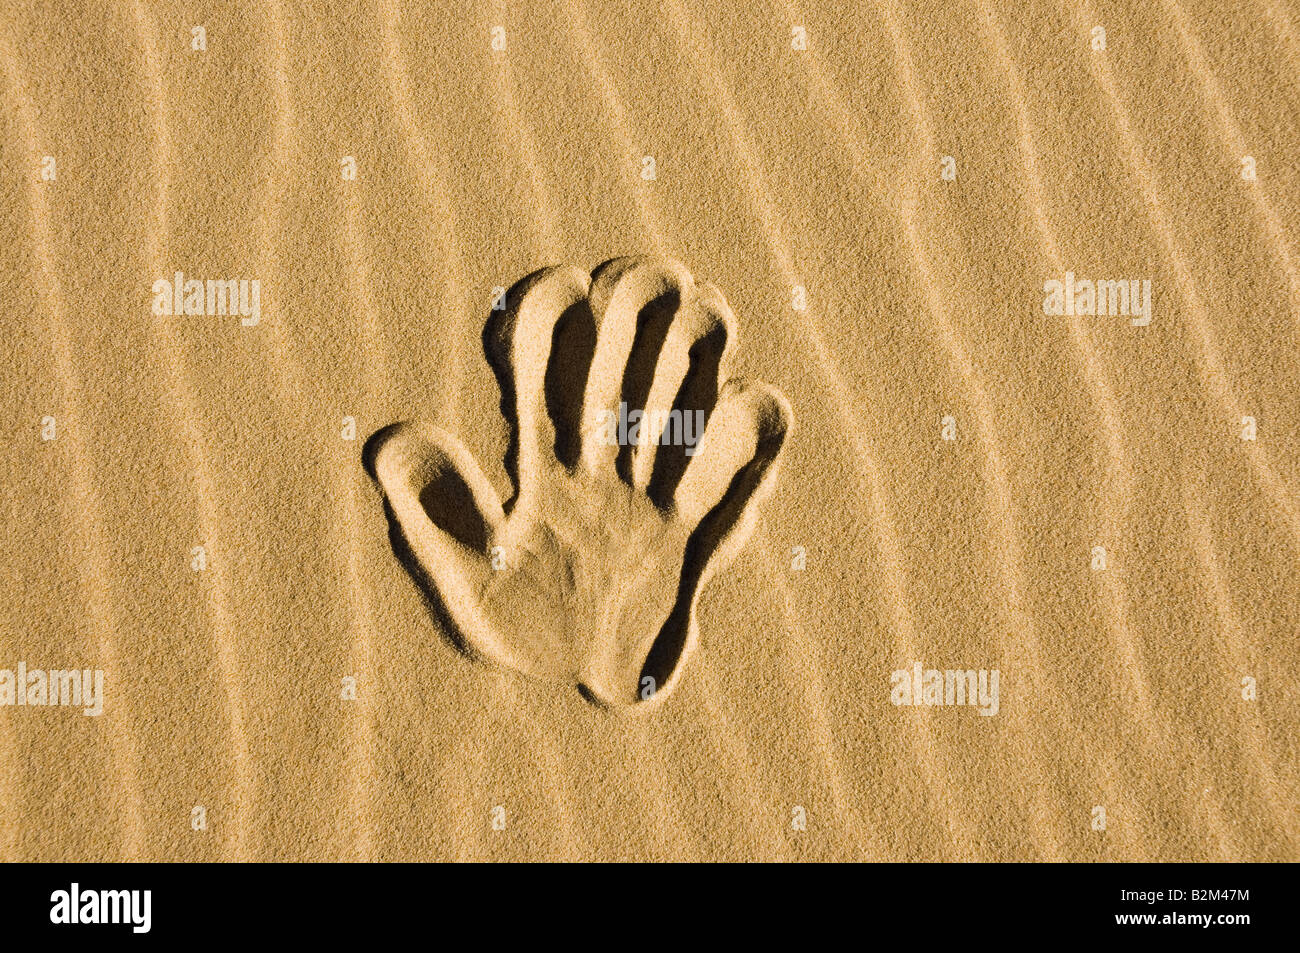 Impresión de mano en la arena Foto de stock